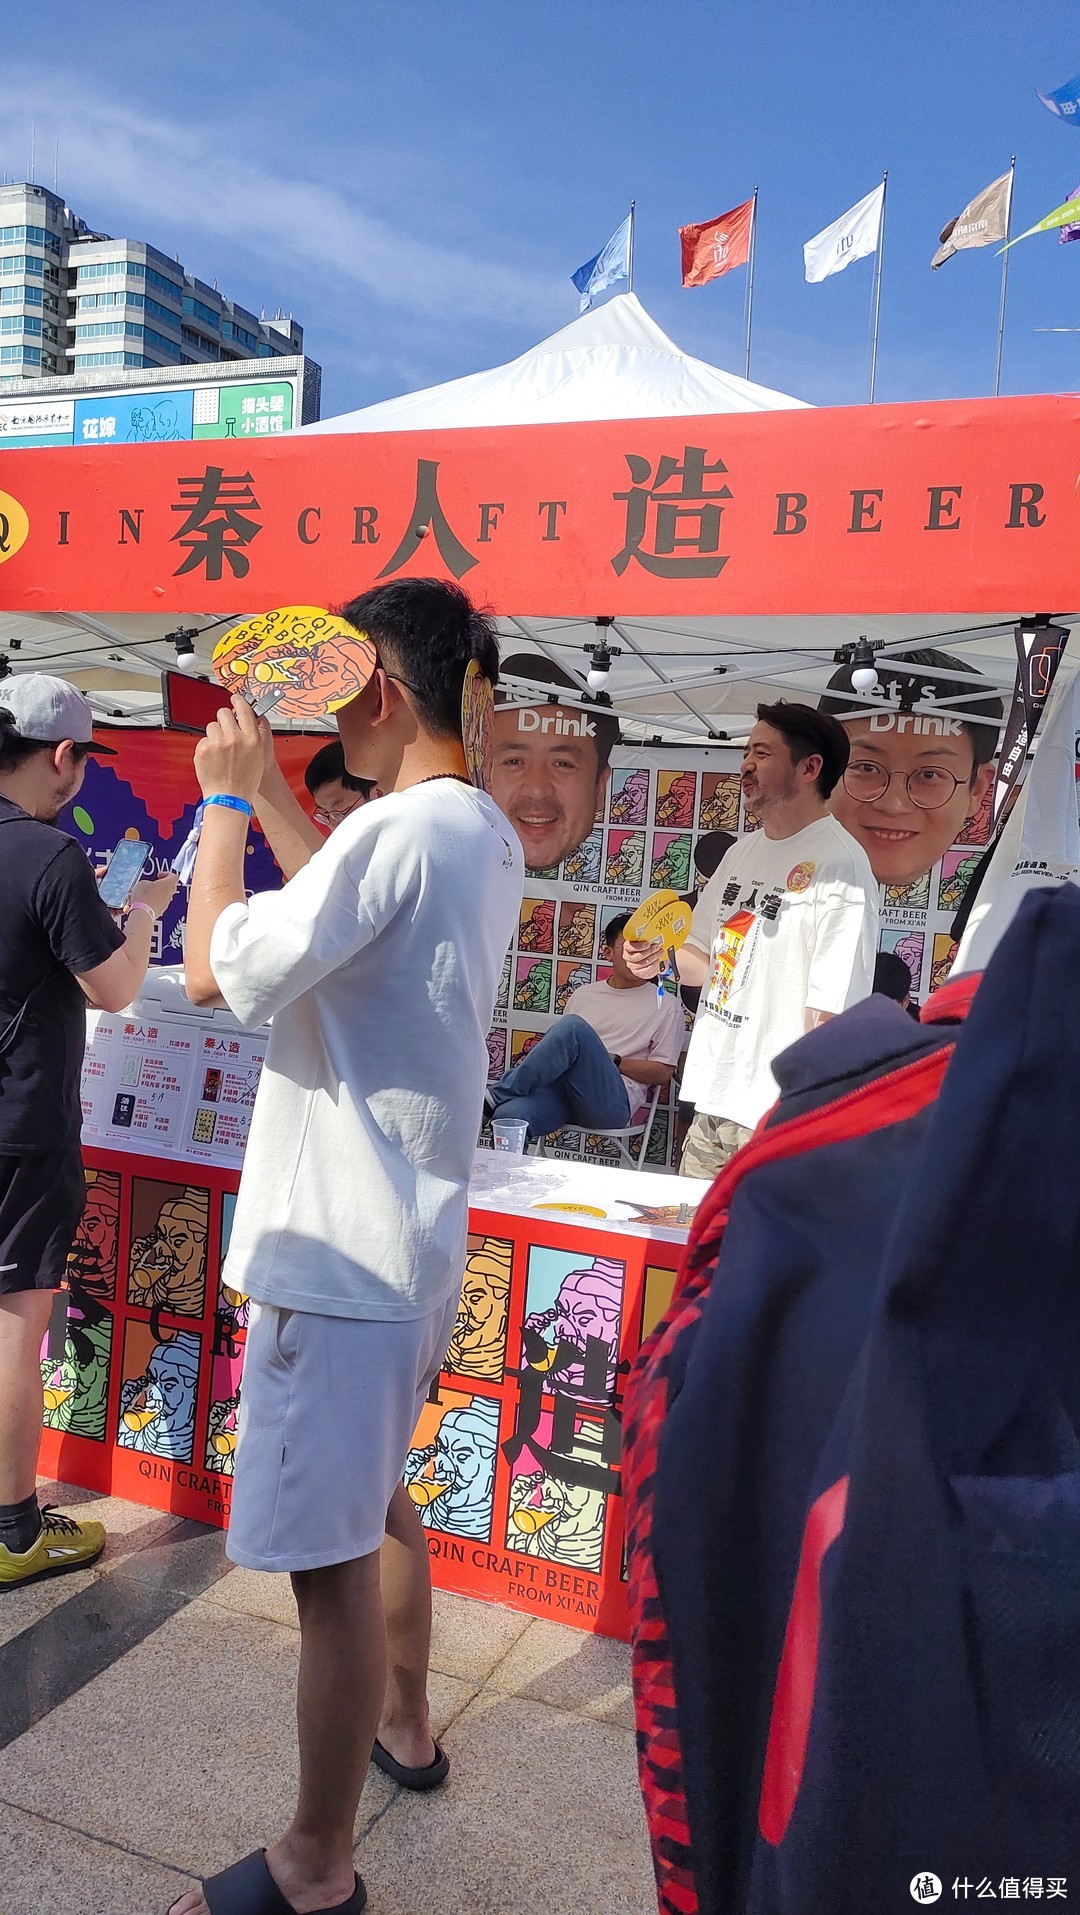 第9届南京精酿啤酒节 现场战况